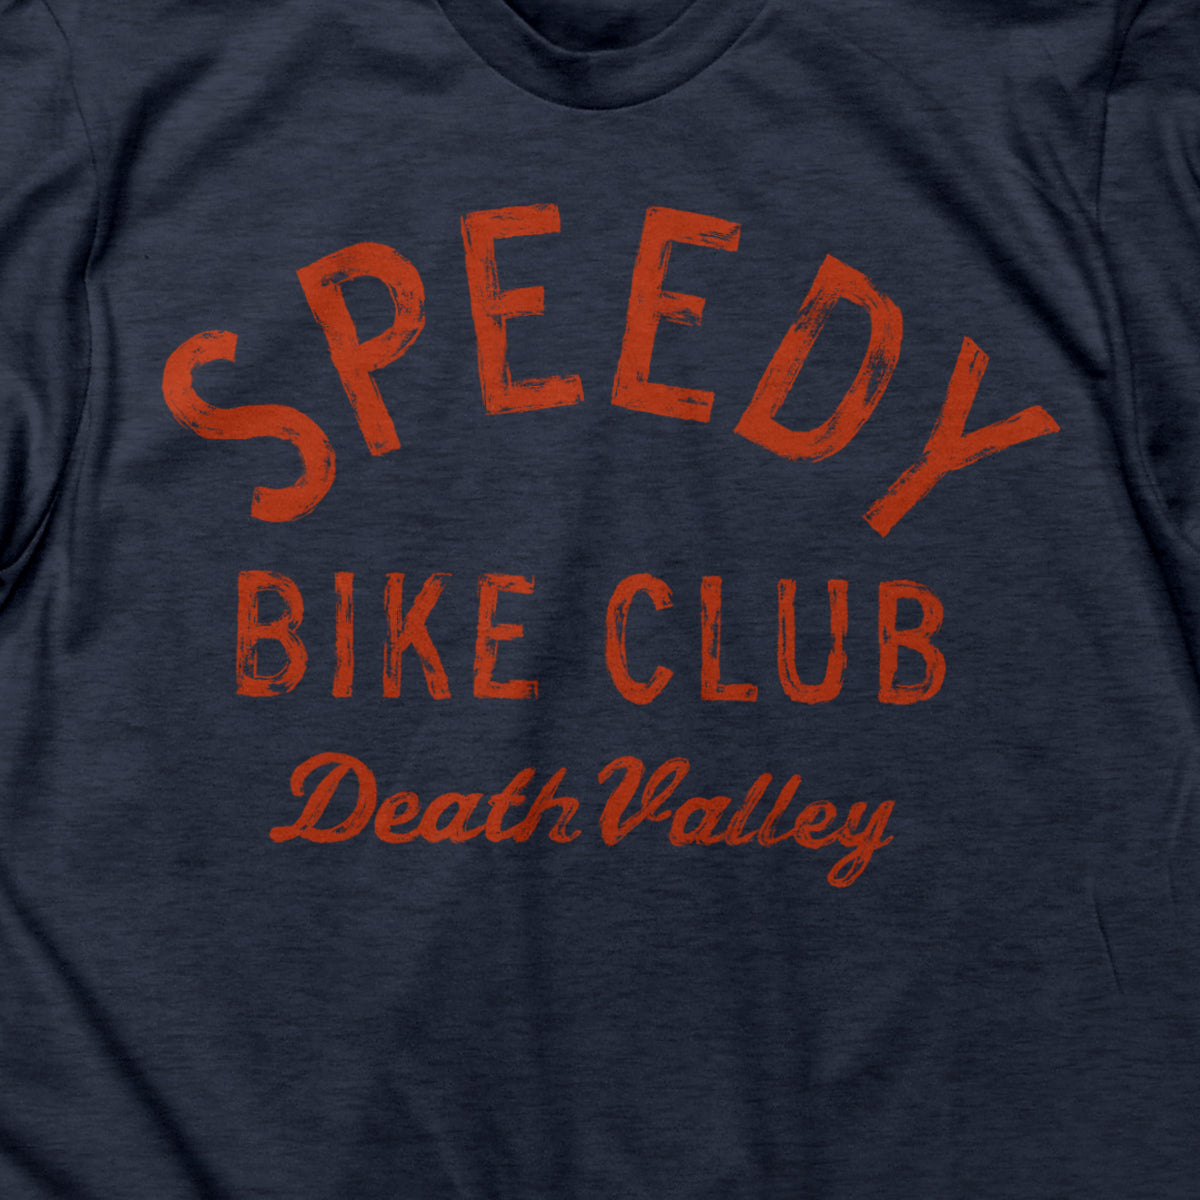 Speedy Death Valley T